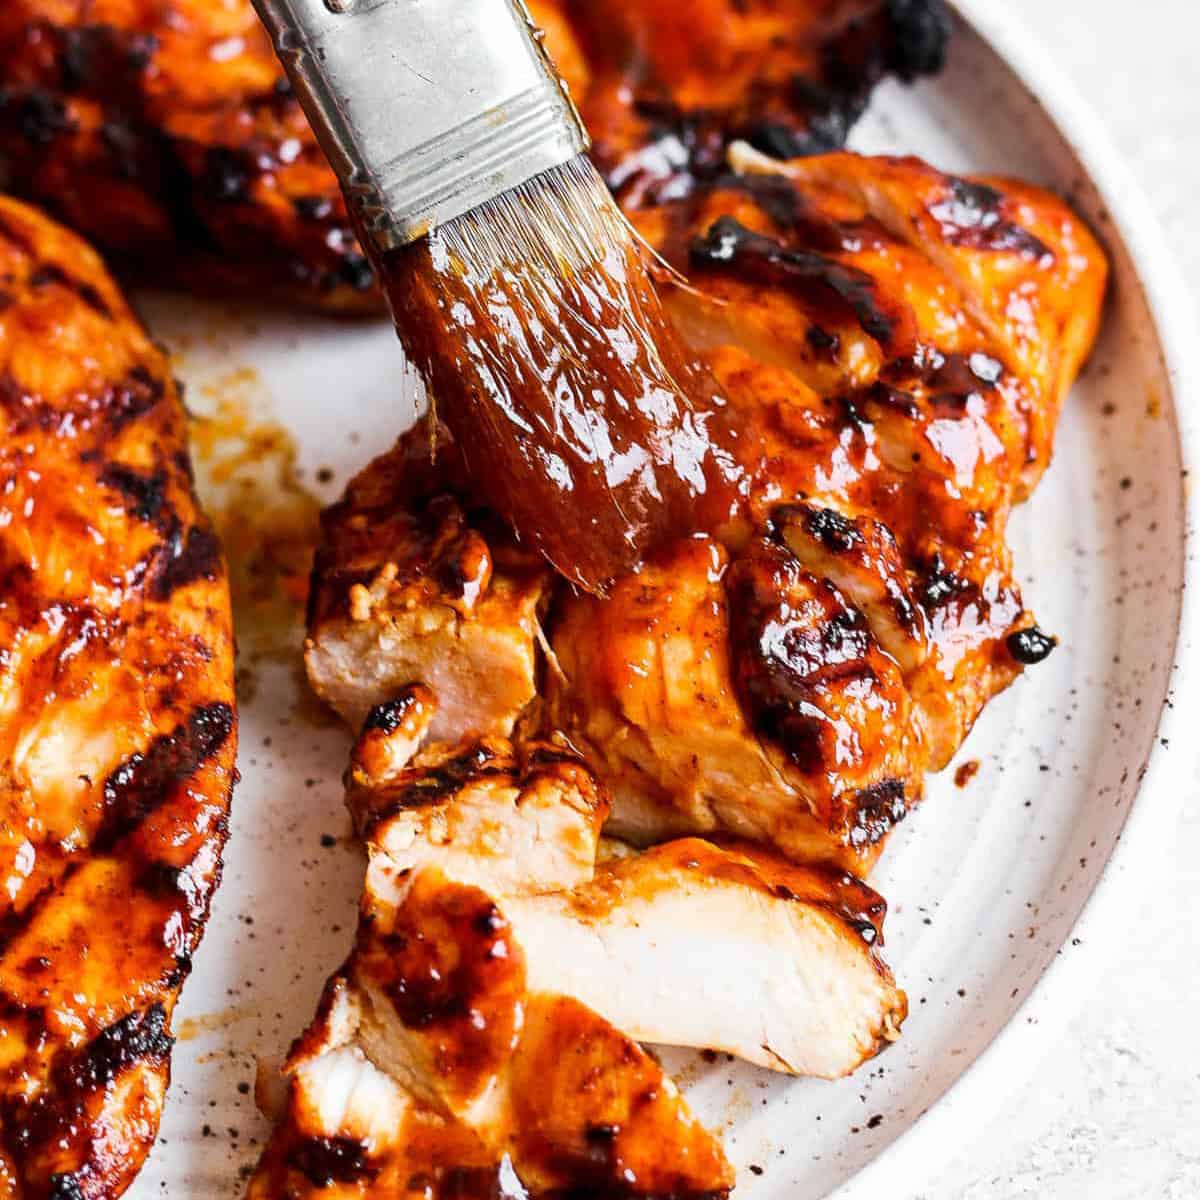 Best BBQ Chicken Marinade Recipe - How To Make BBQ Chicken Marinade